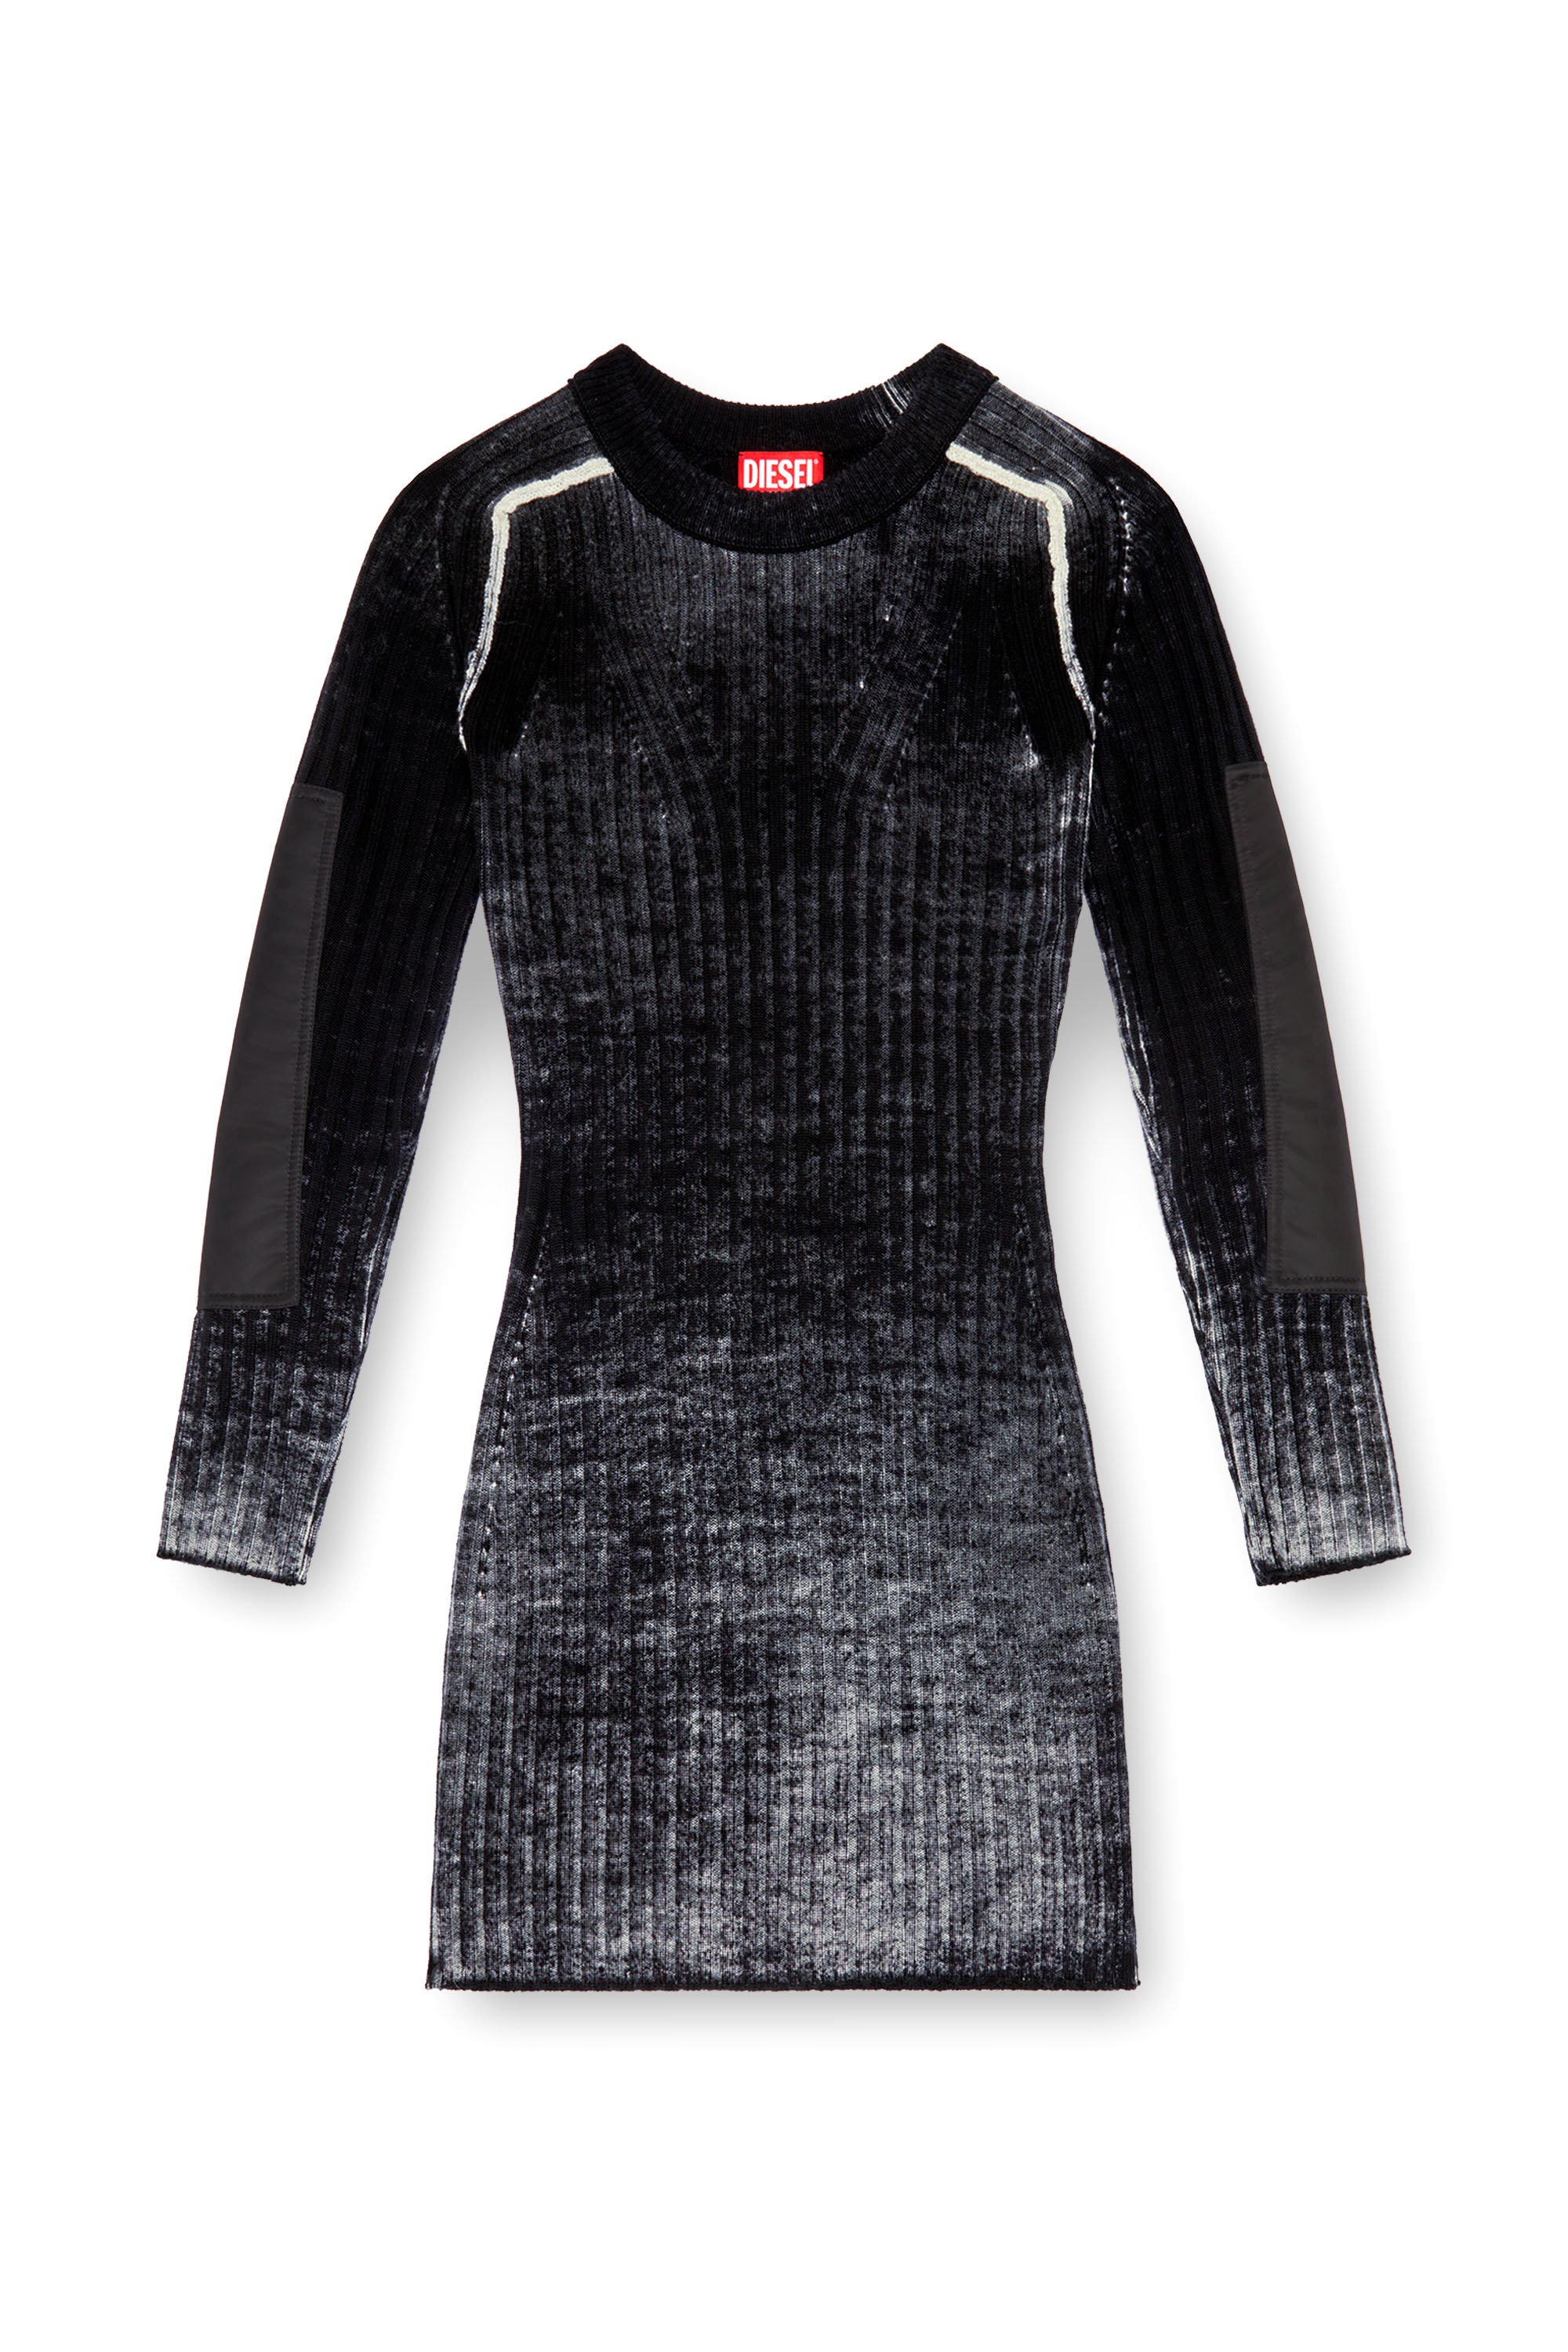 Diesel - M-ARTISTA, Woman Short dress in treated wool knit in Black - Image 5